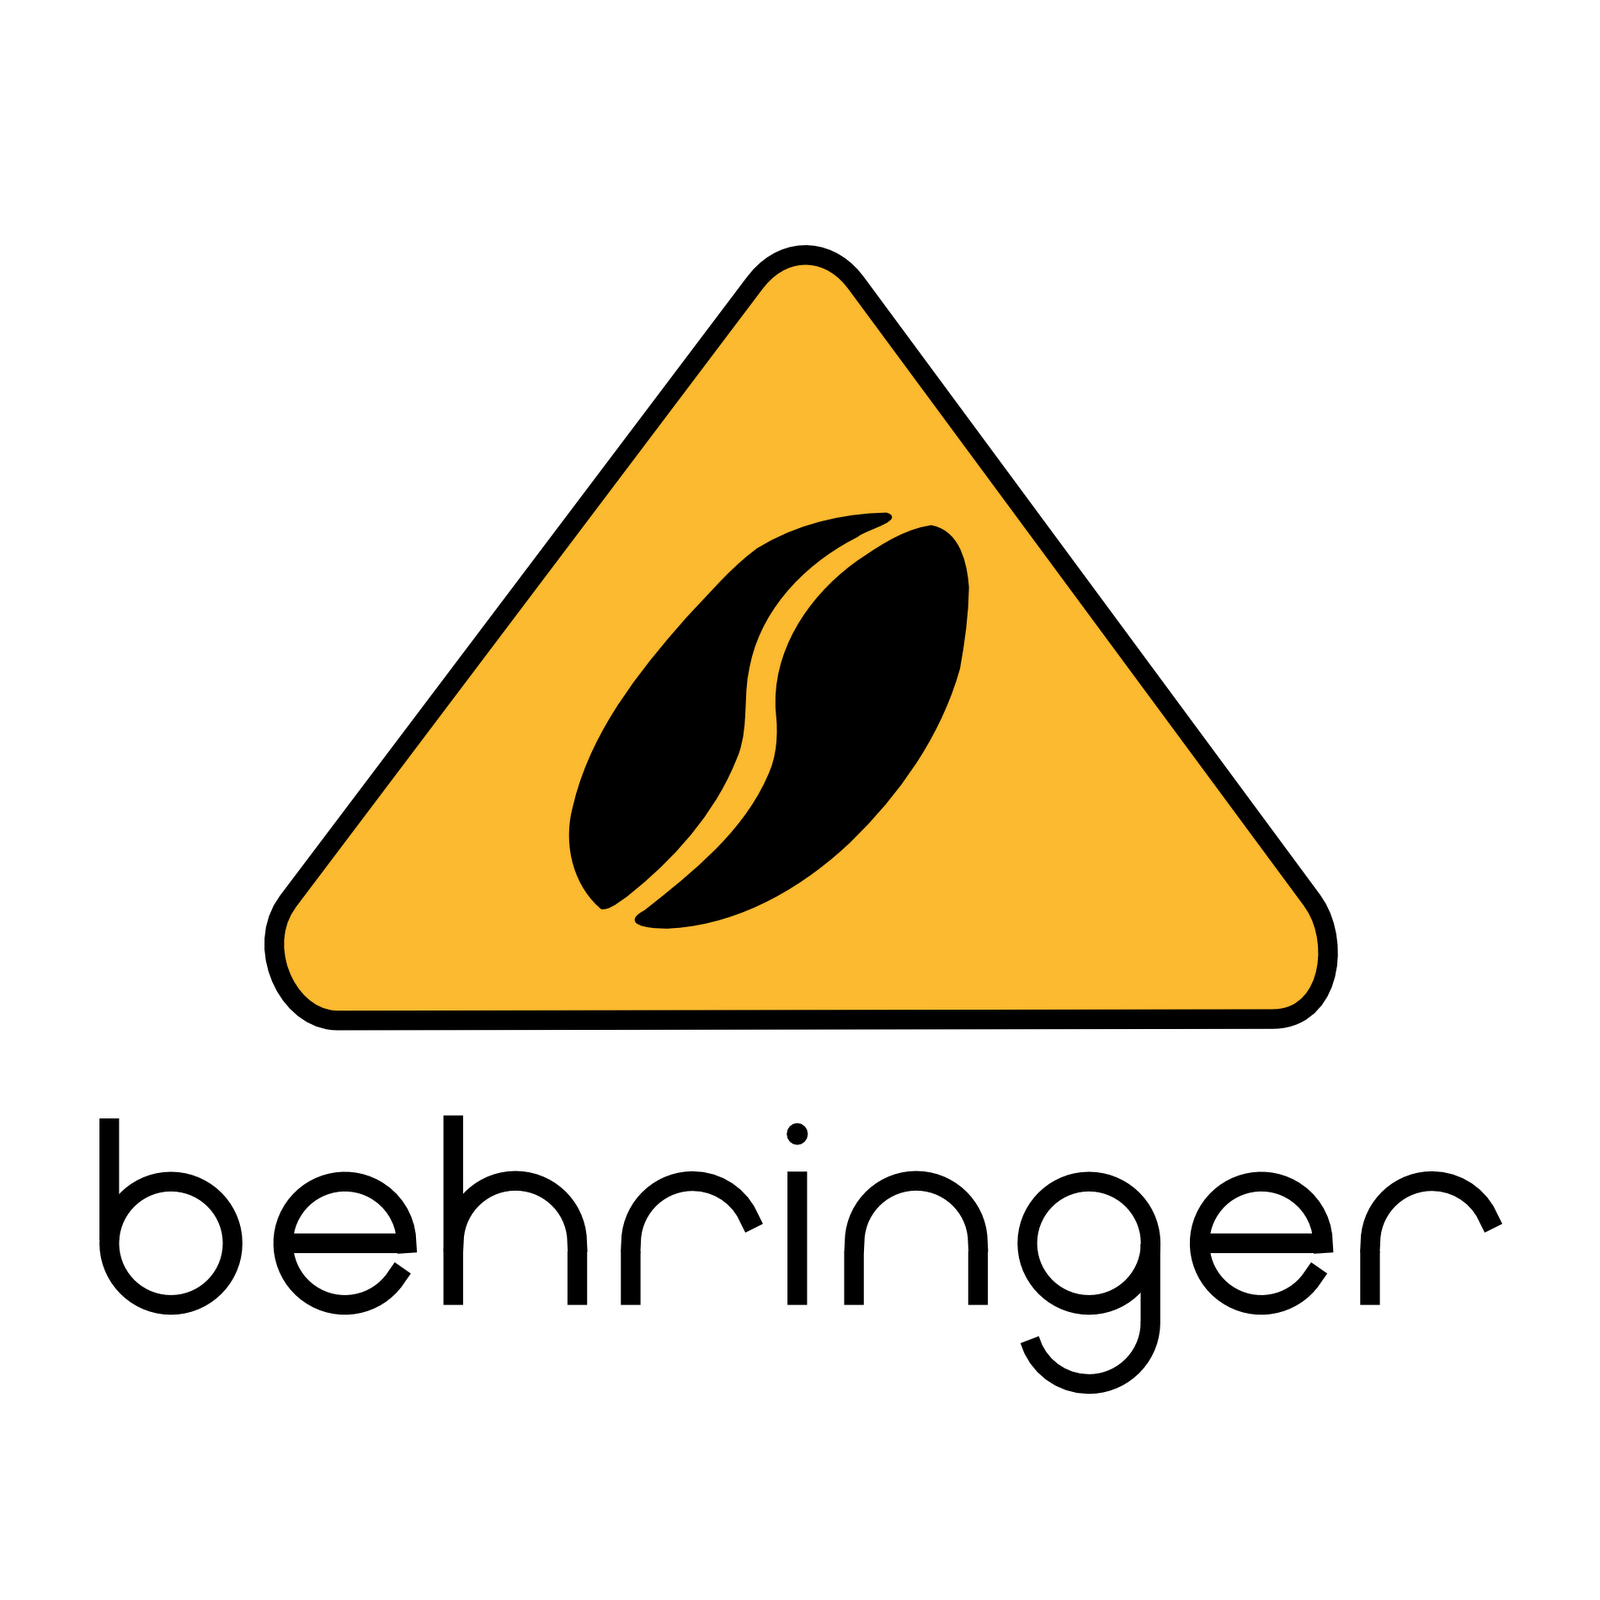 Behringer Logo - Behringer Logos